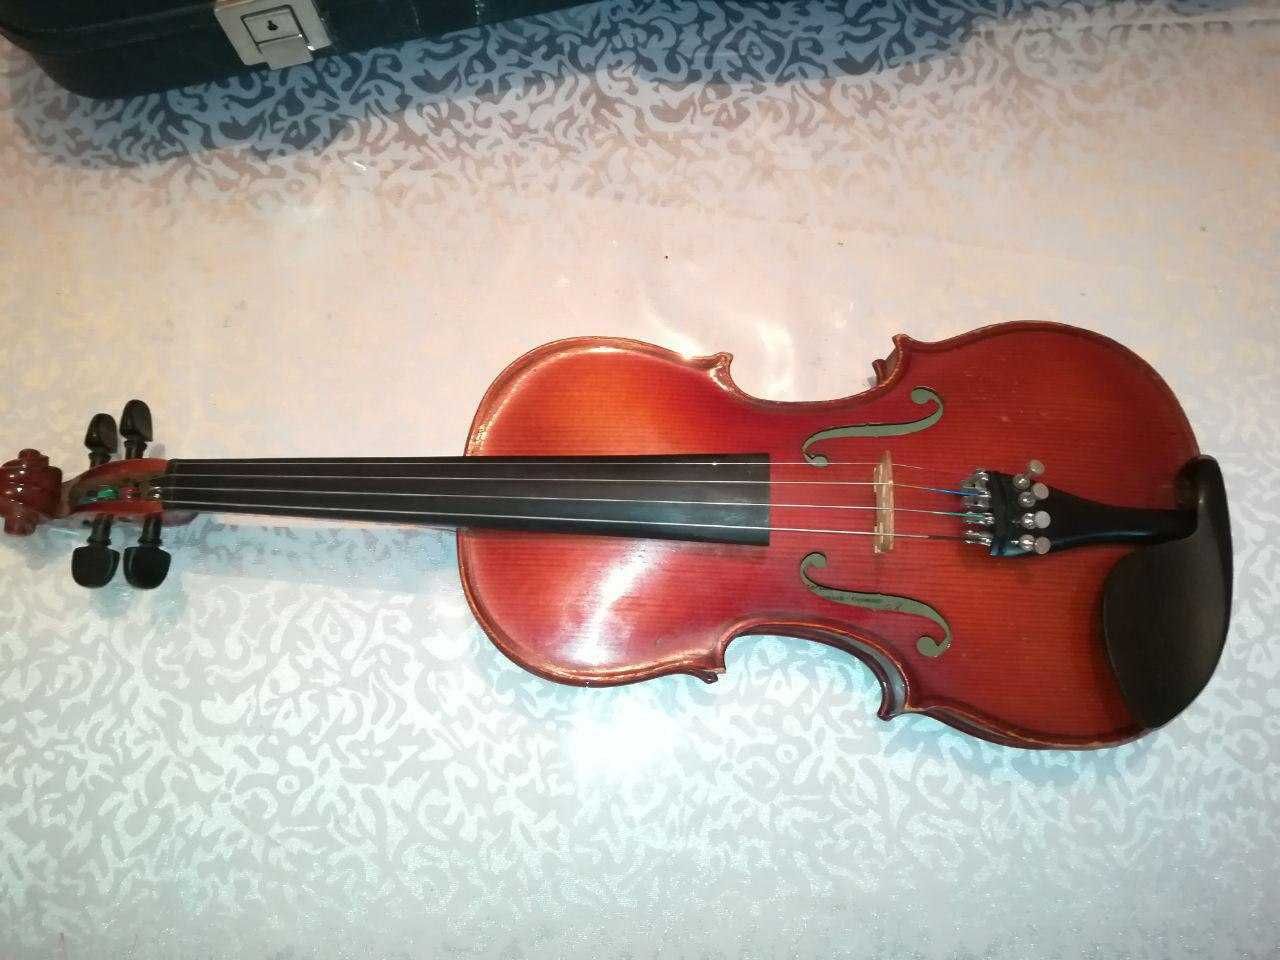 Срочно продаётся скрипка